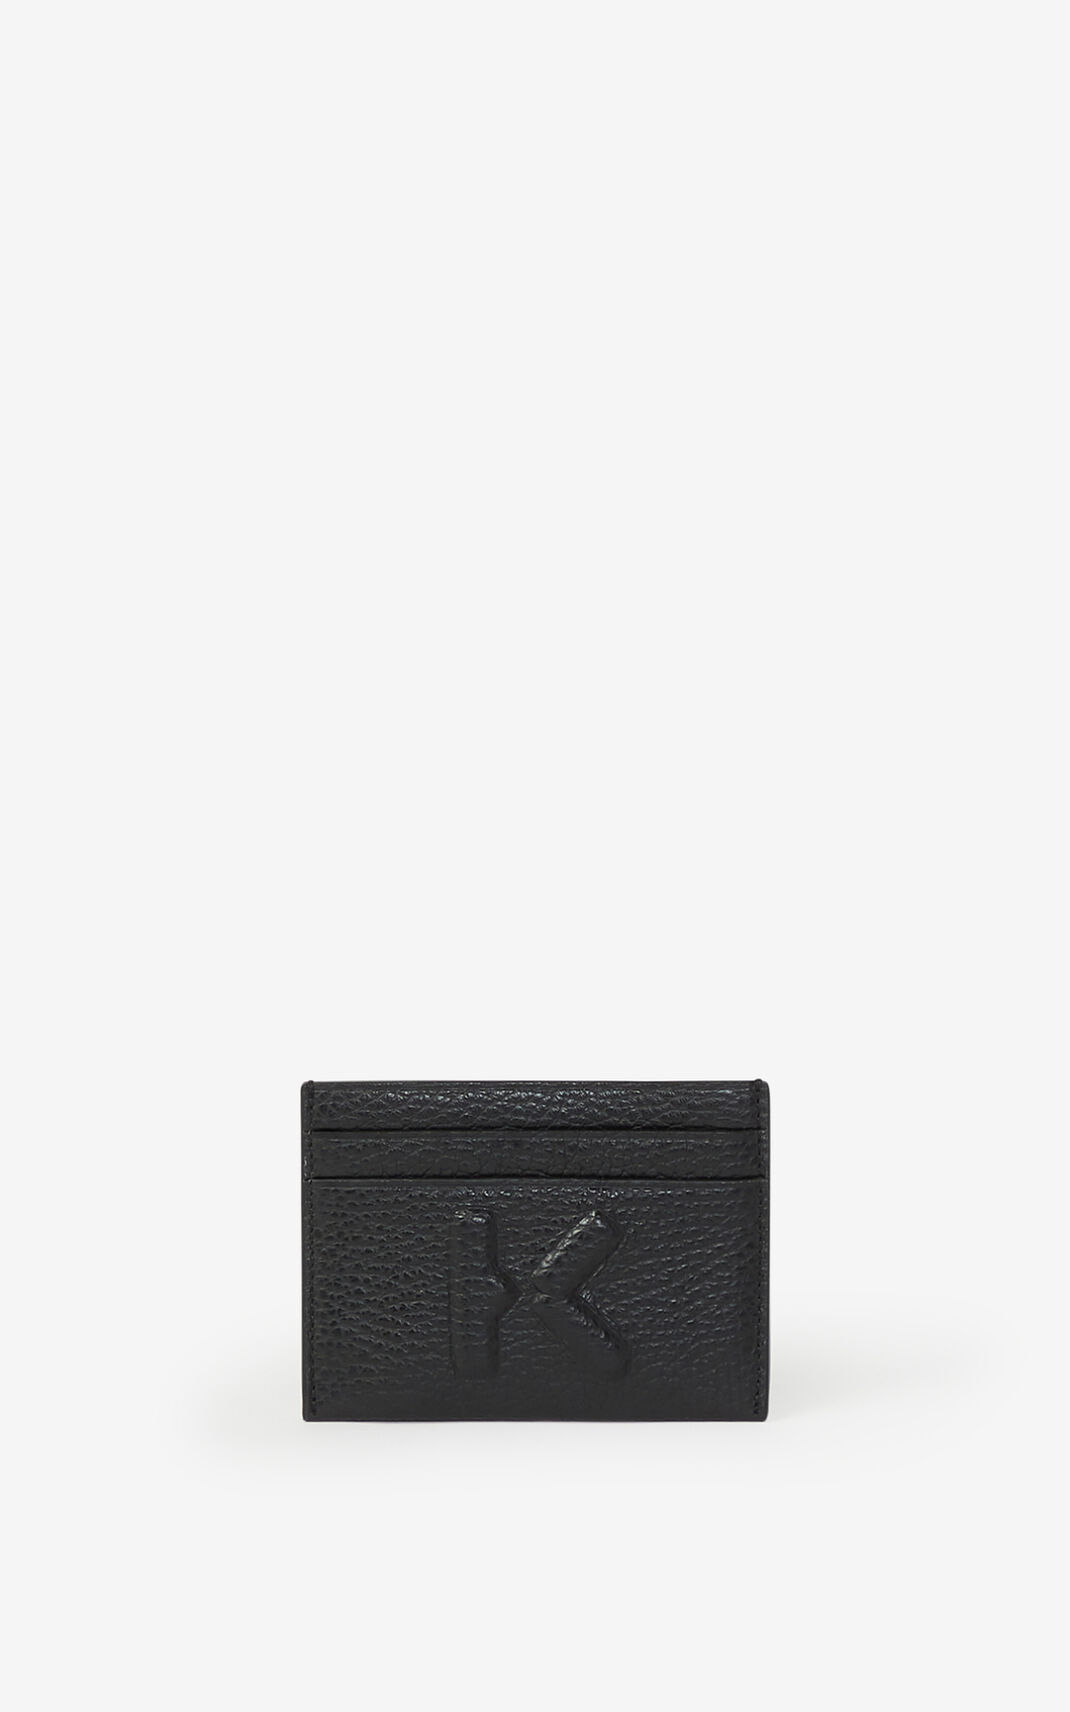 Kenzo Imprint grained leather cardholder Wallet Black For Mens 5792UWGER